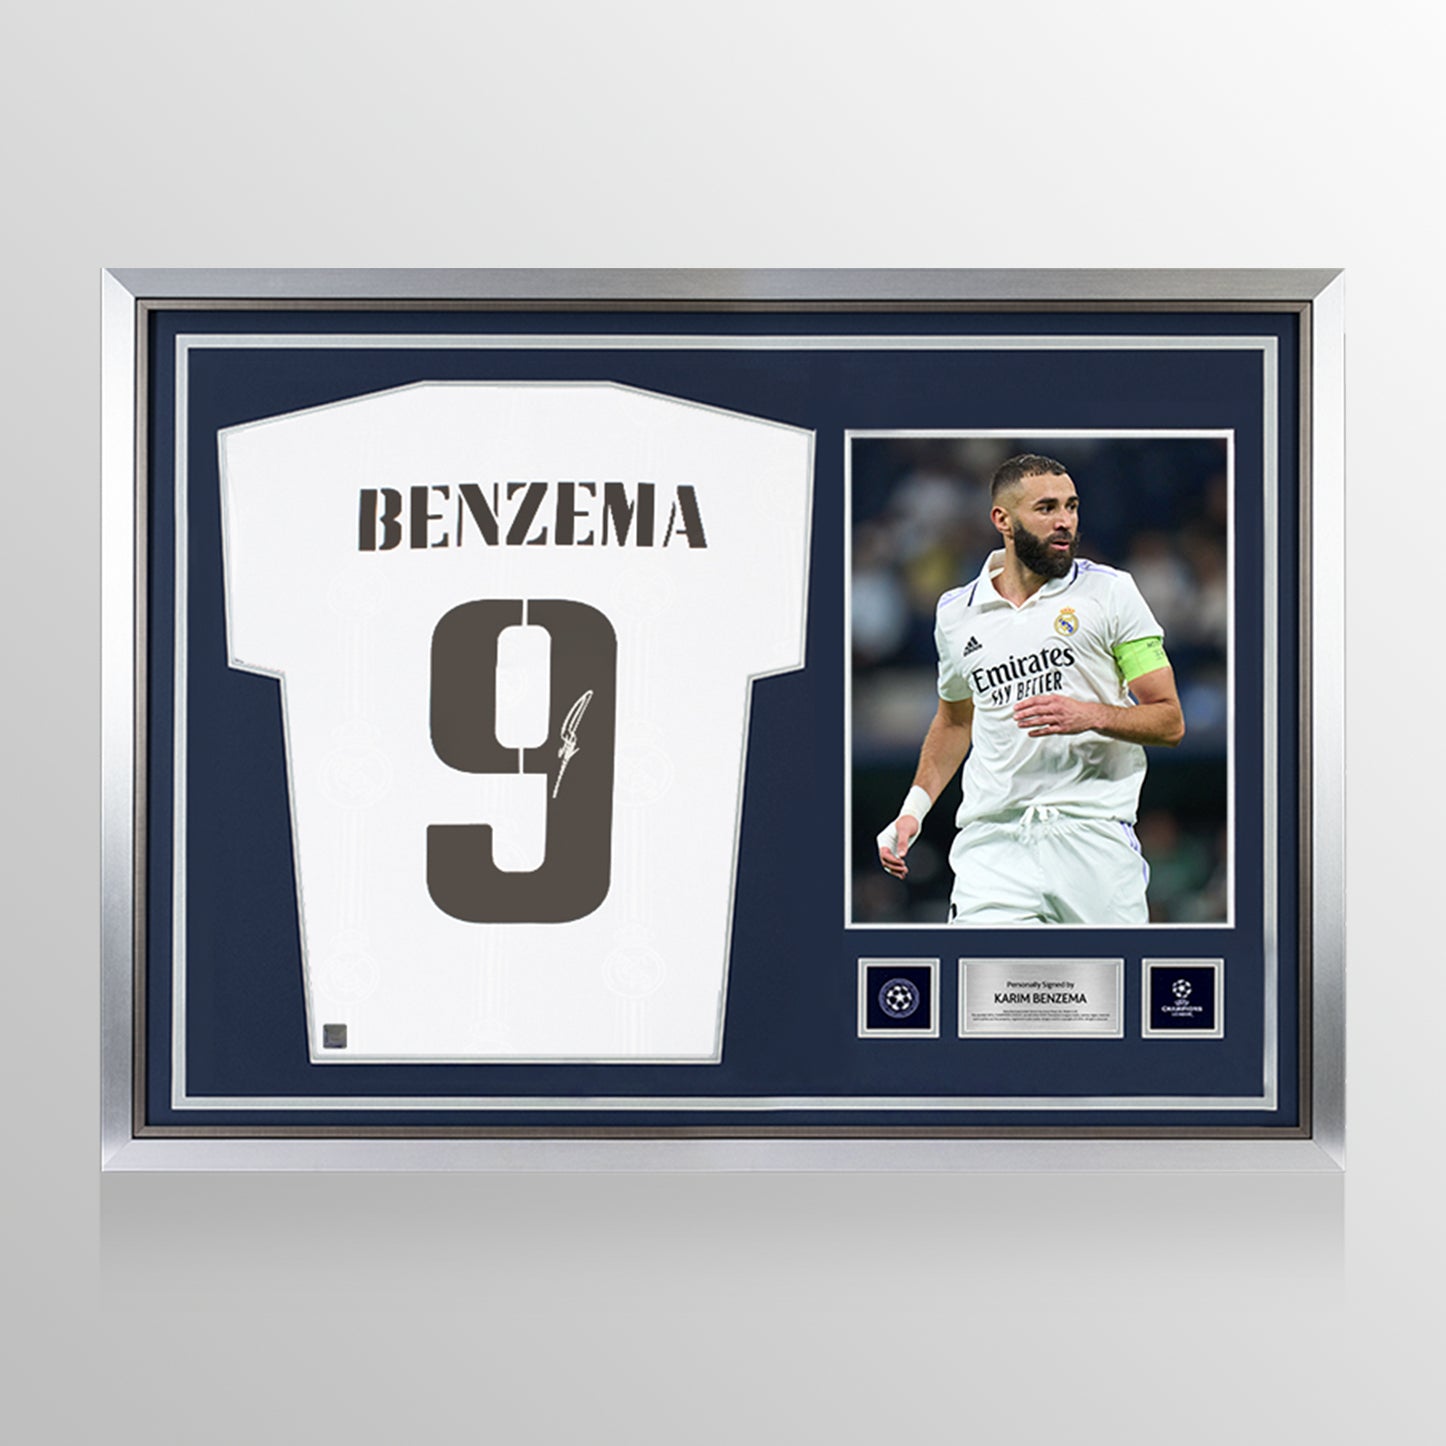 22 23 24 BENZEMA Finals Madrid Soccer Jersey Football Shirt Player